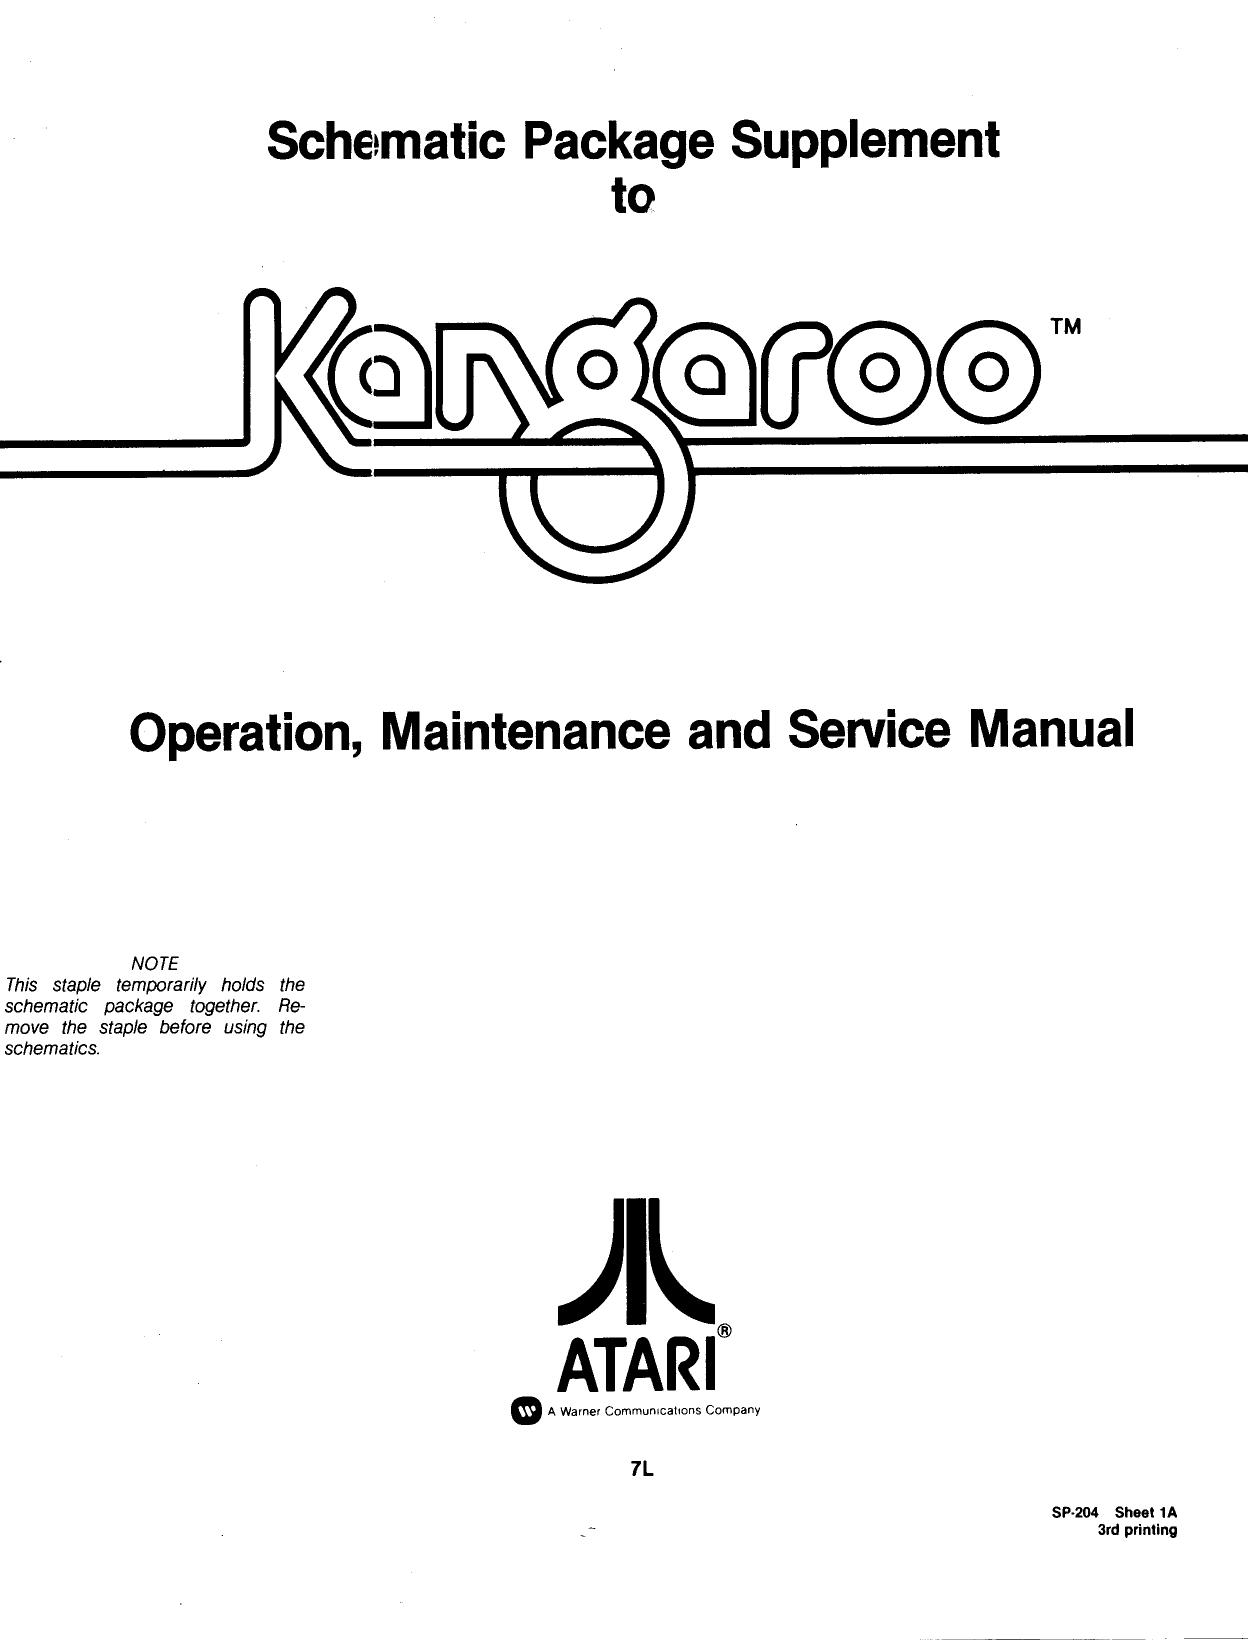 Kangaroo (SP-204 3rd Printing) (Schematic Package) (U)